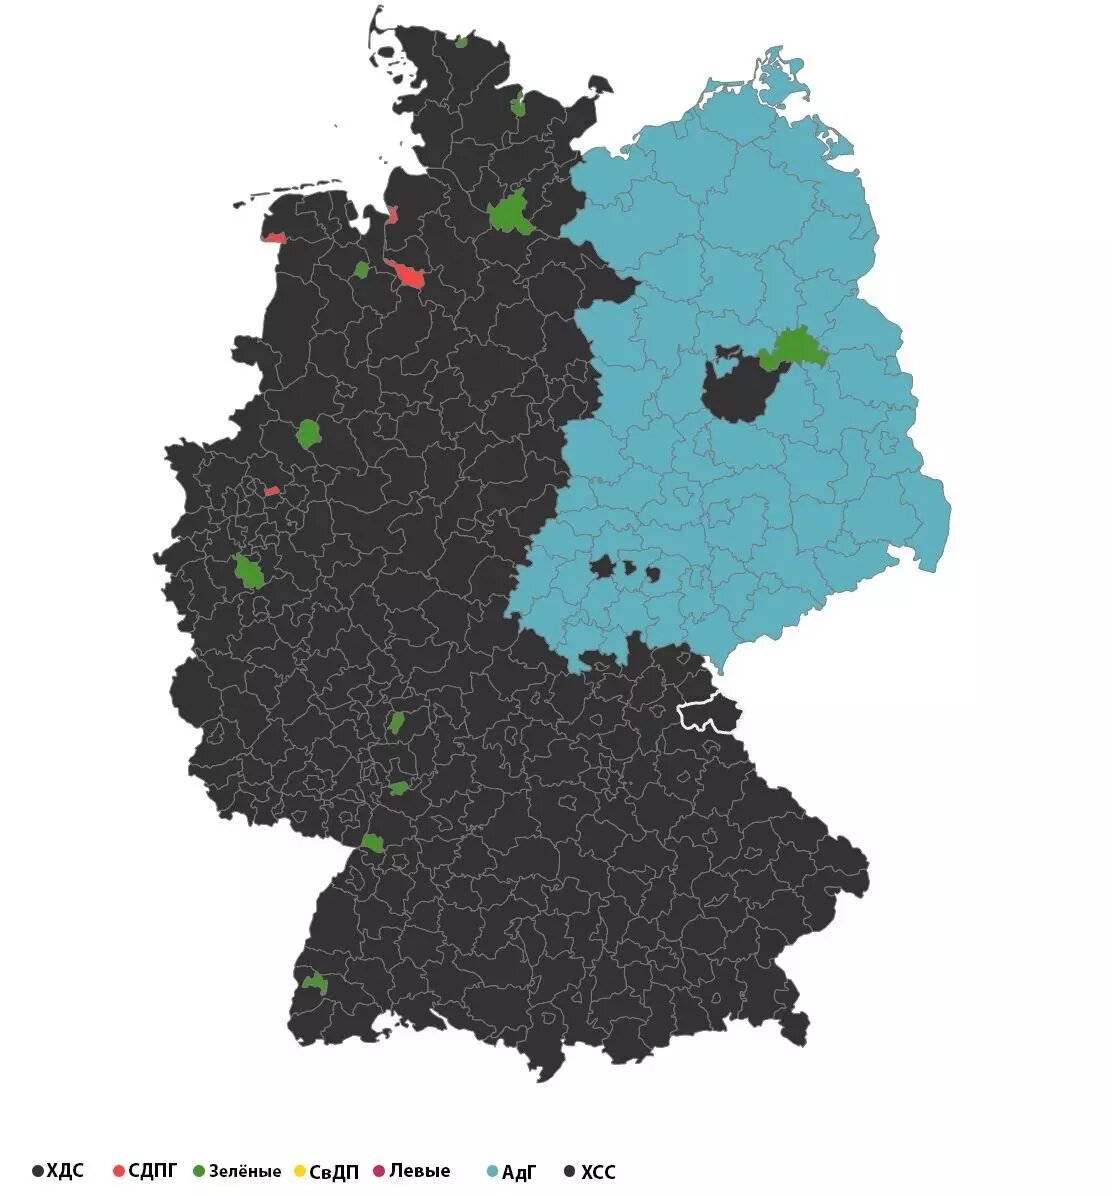 Черным цветом выделена территория Западной Германии, где голосовали в основном за блок ХДС/ХСС, а голубым — бывшей ГДР, где предпочли националистов. Фото: BILD